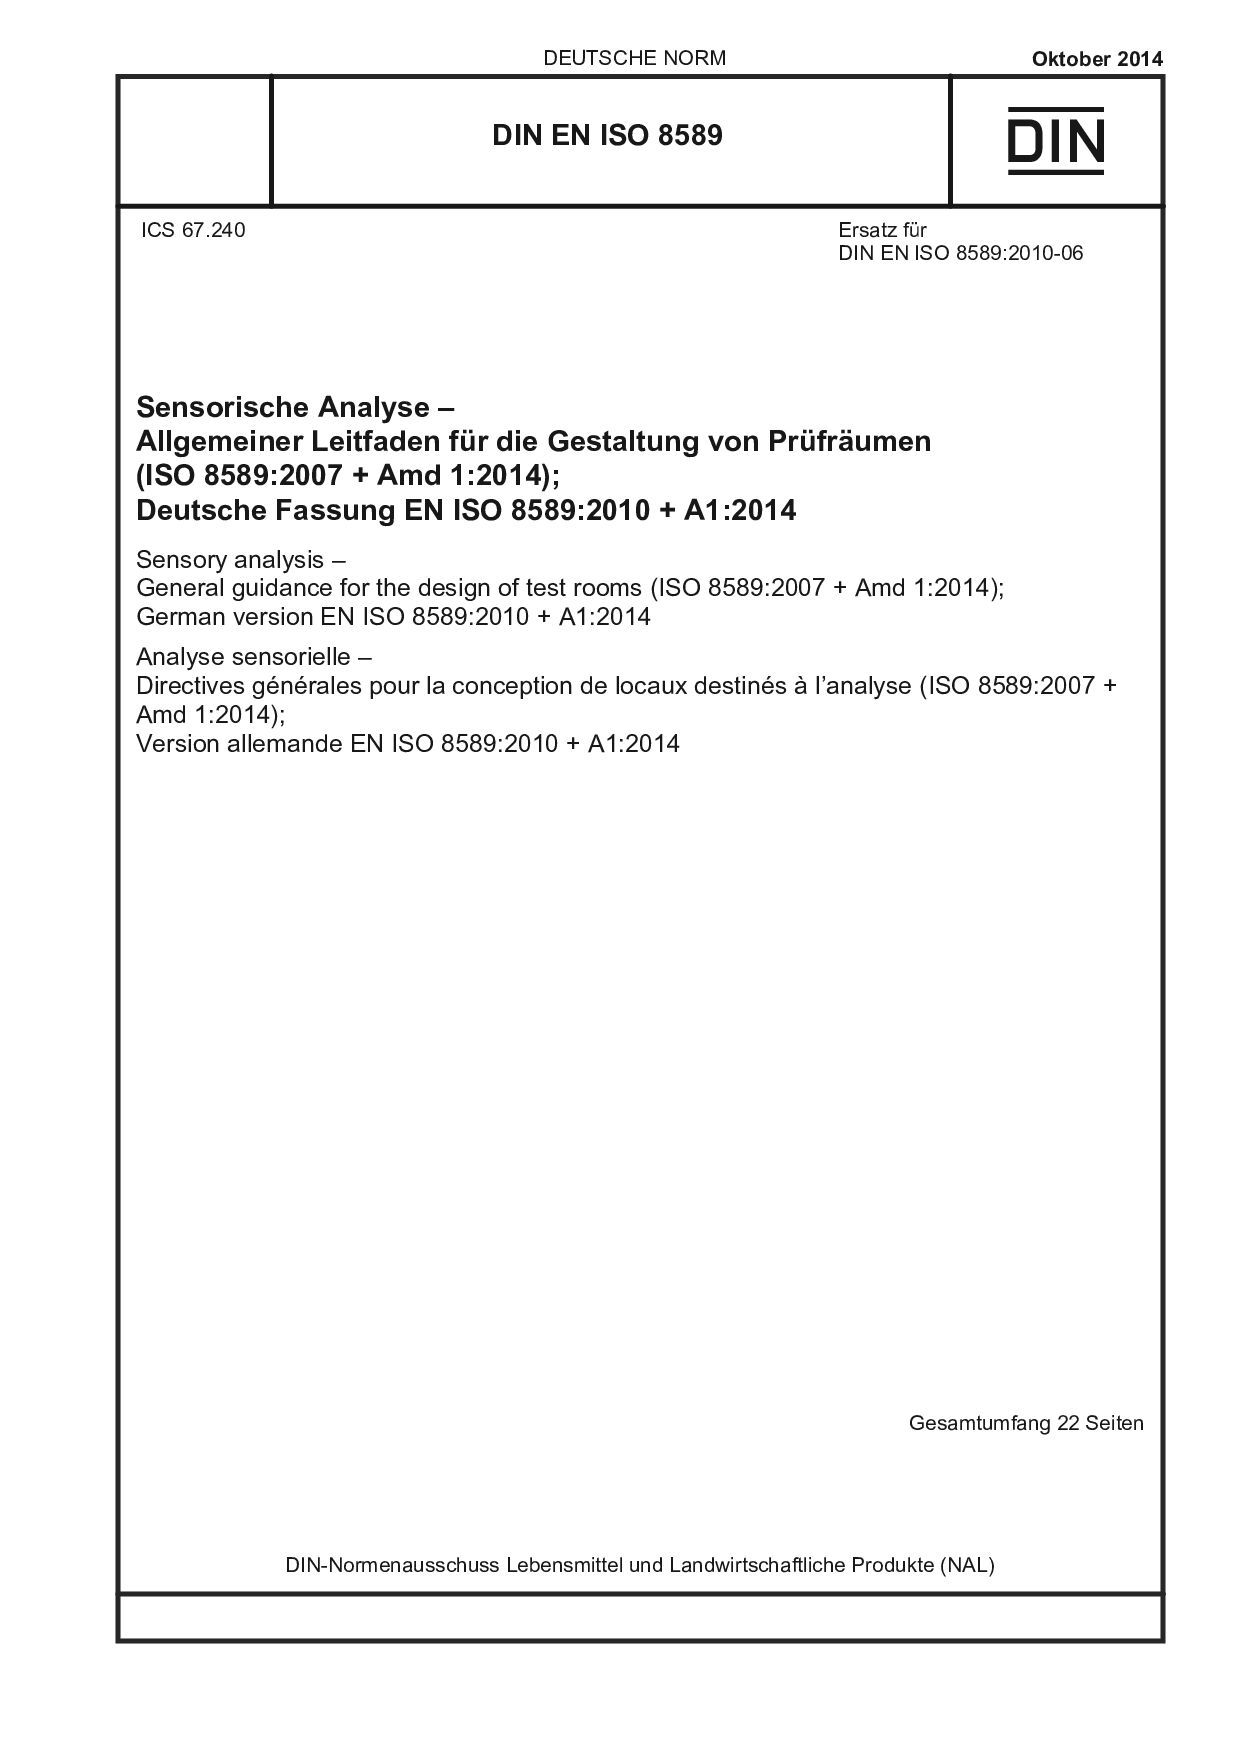 DIN EN ISO 8589:2014封面图